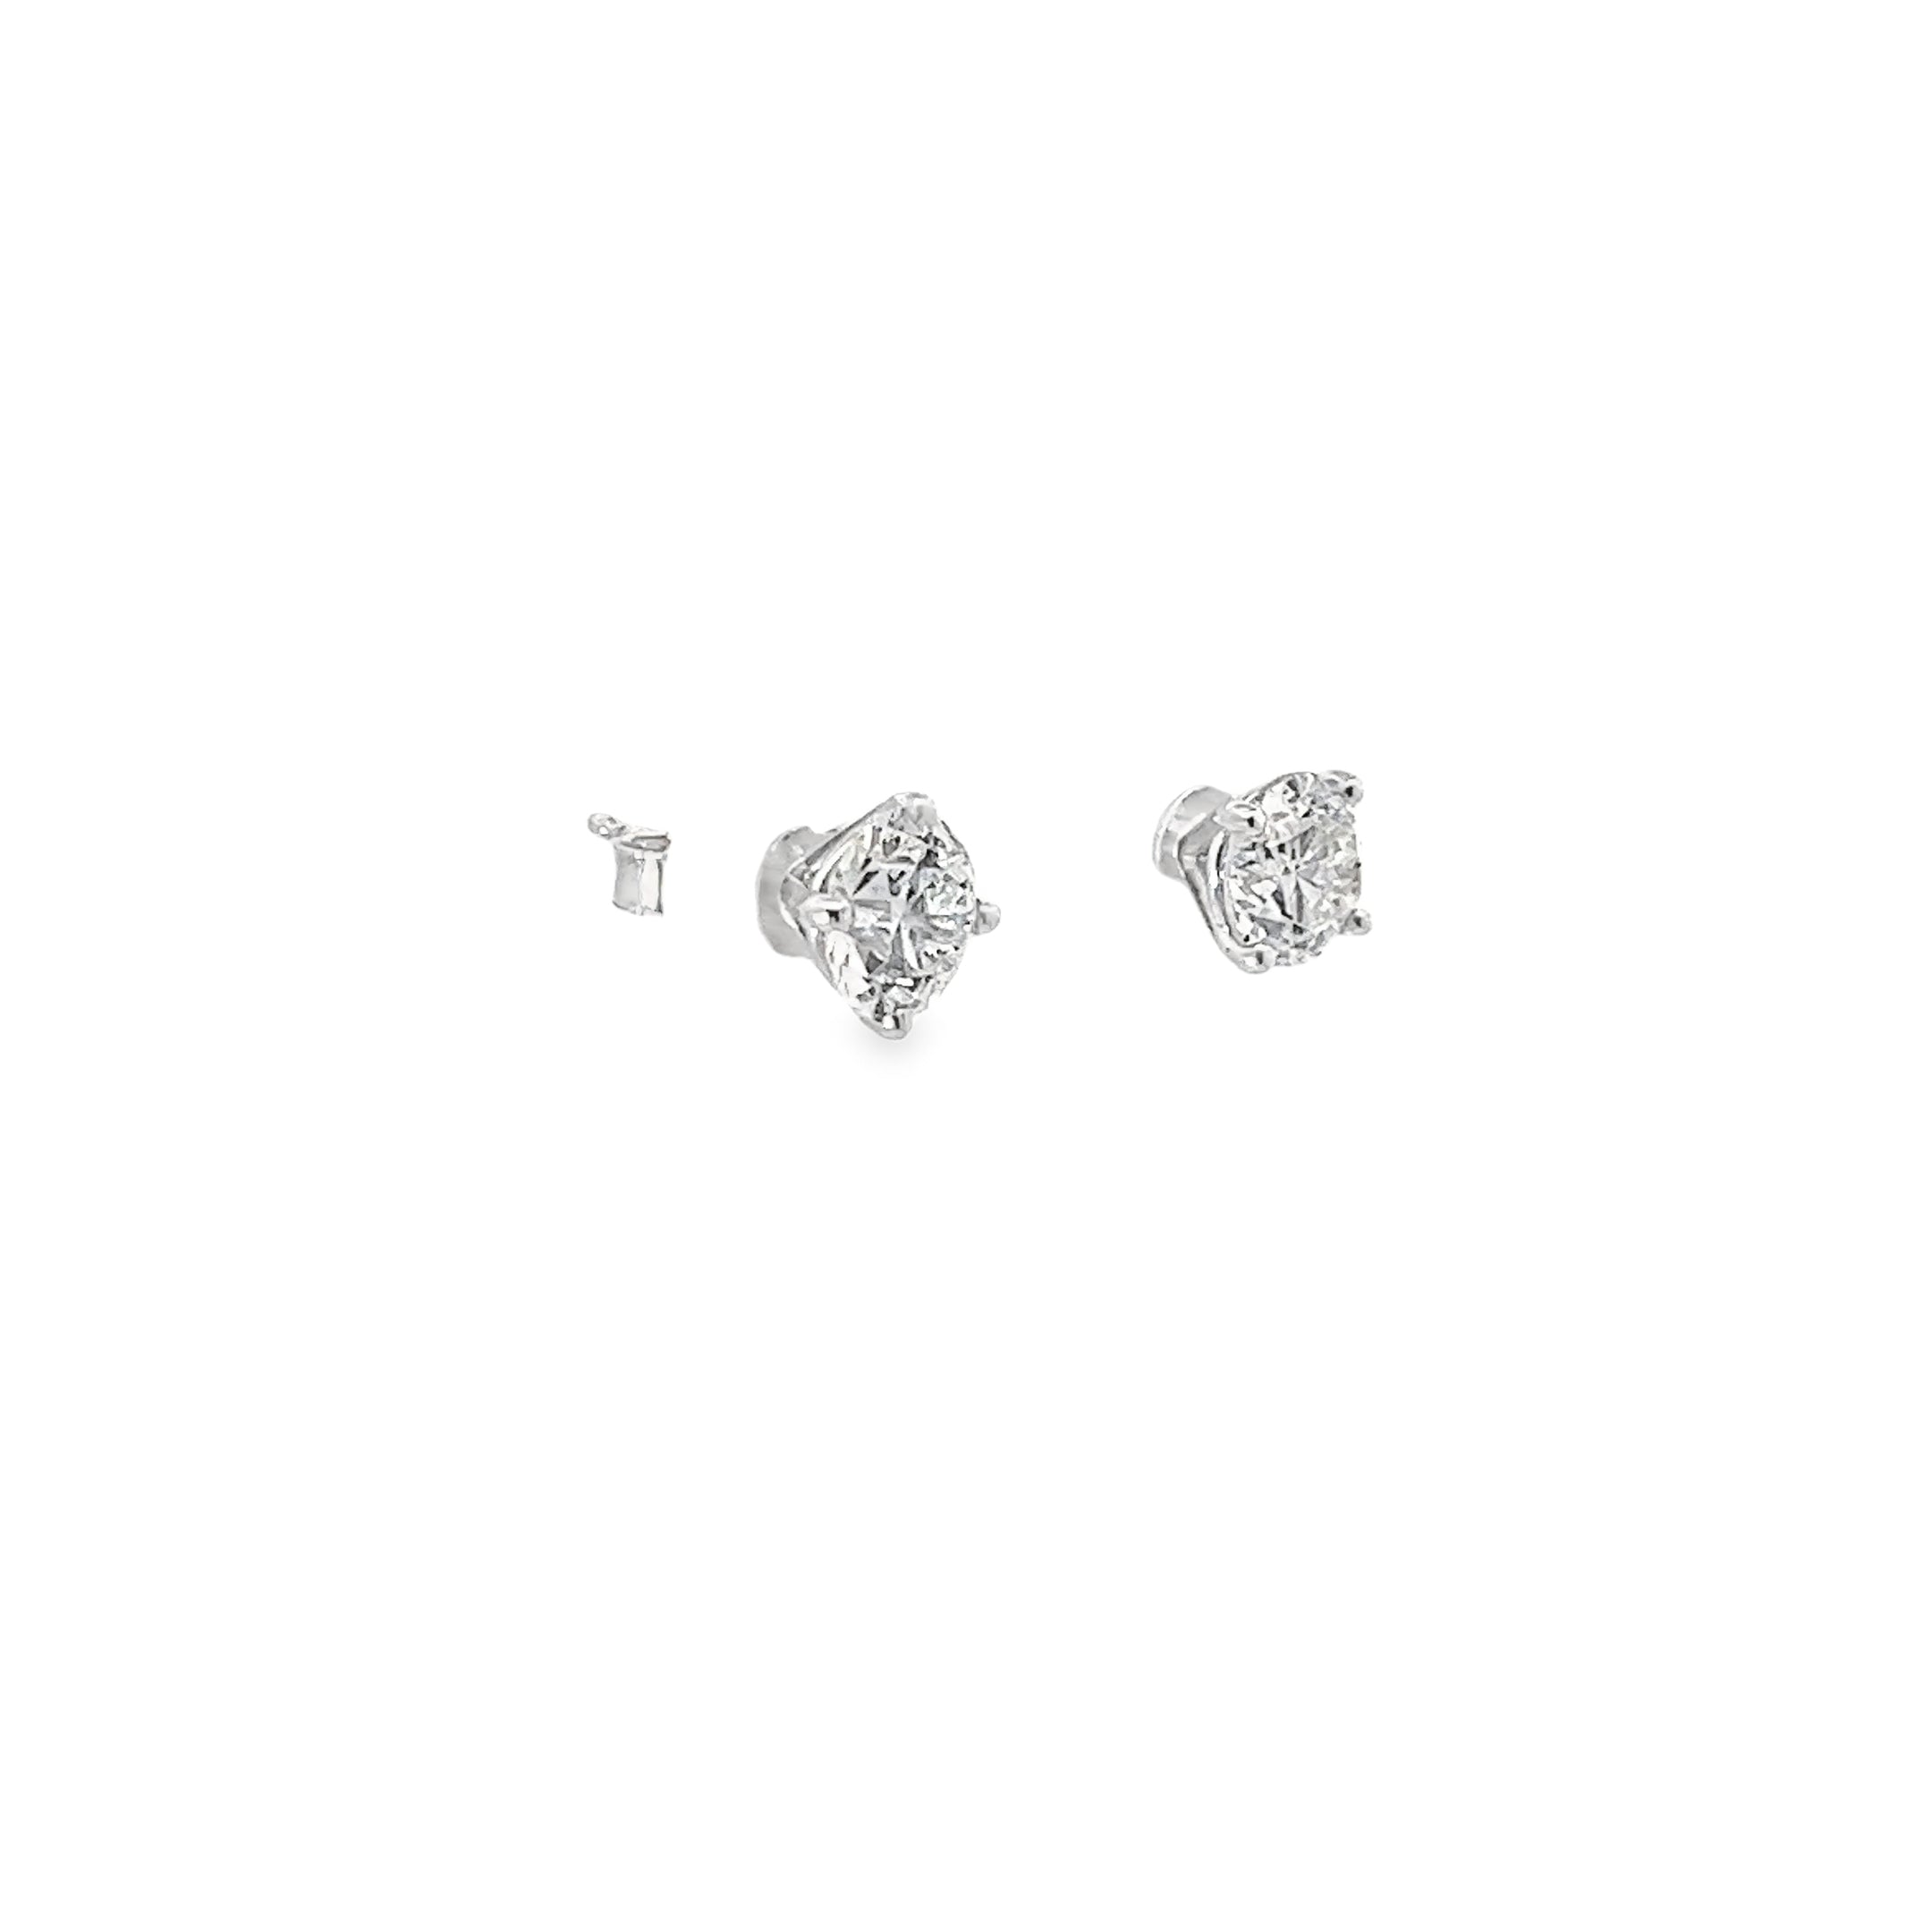 Ladies 14k white gold Diamond stud earrings